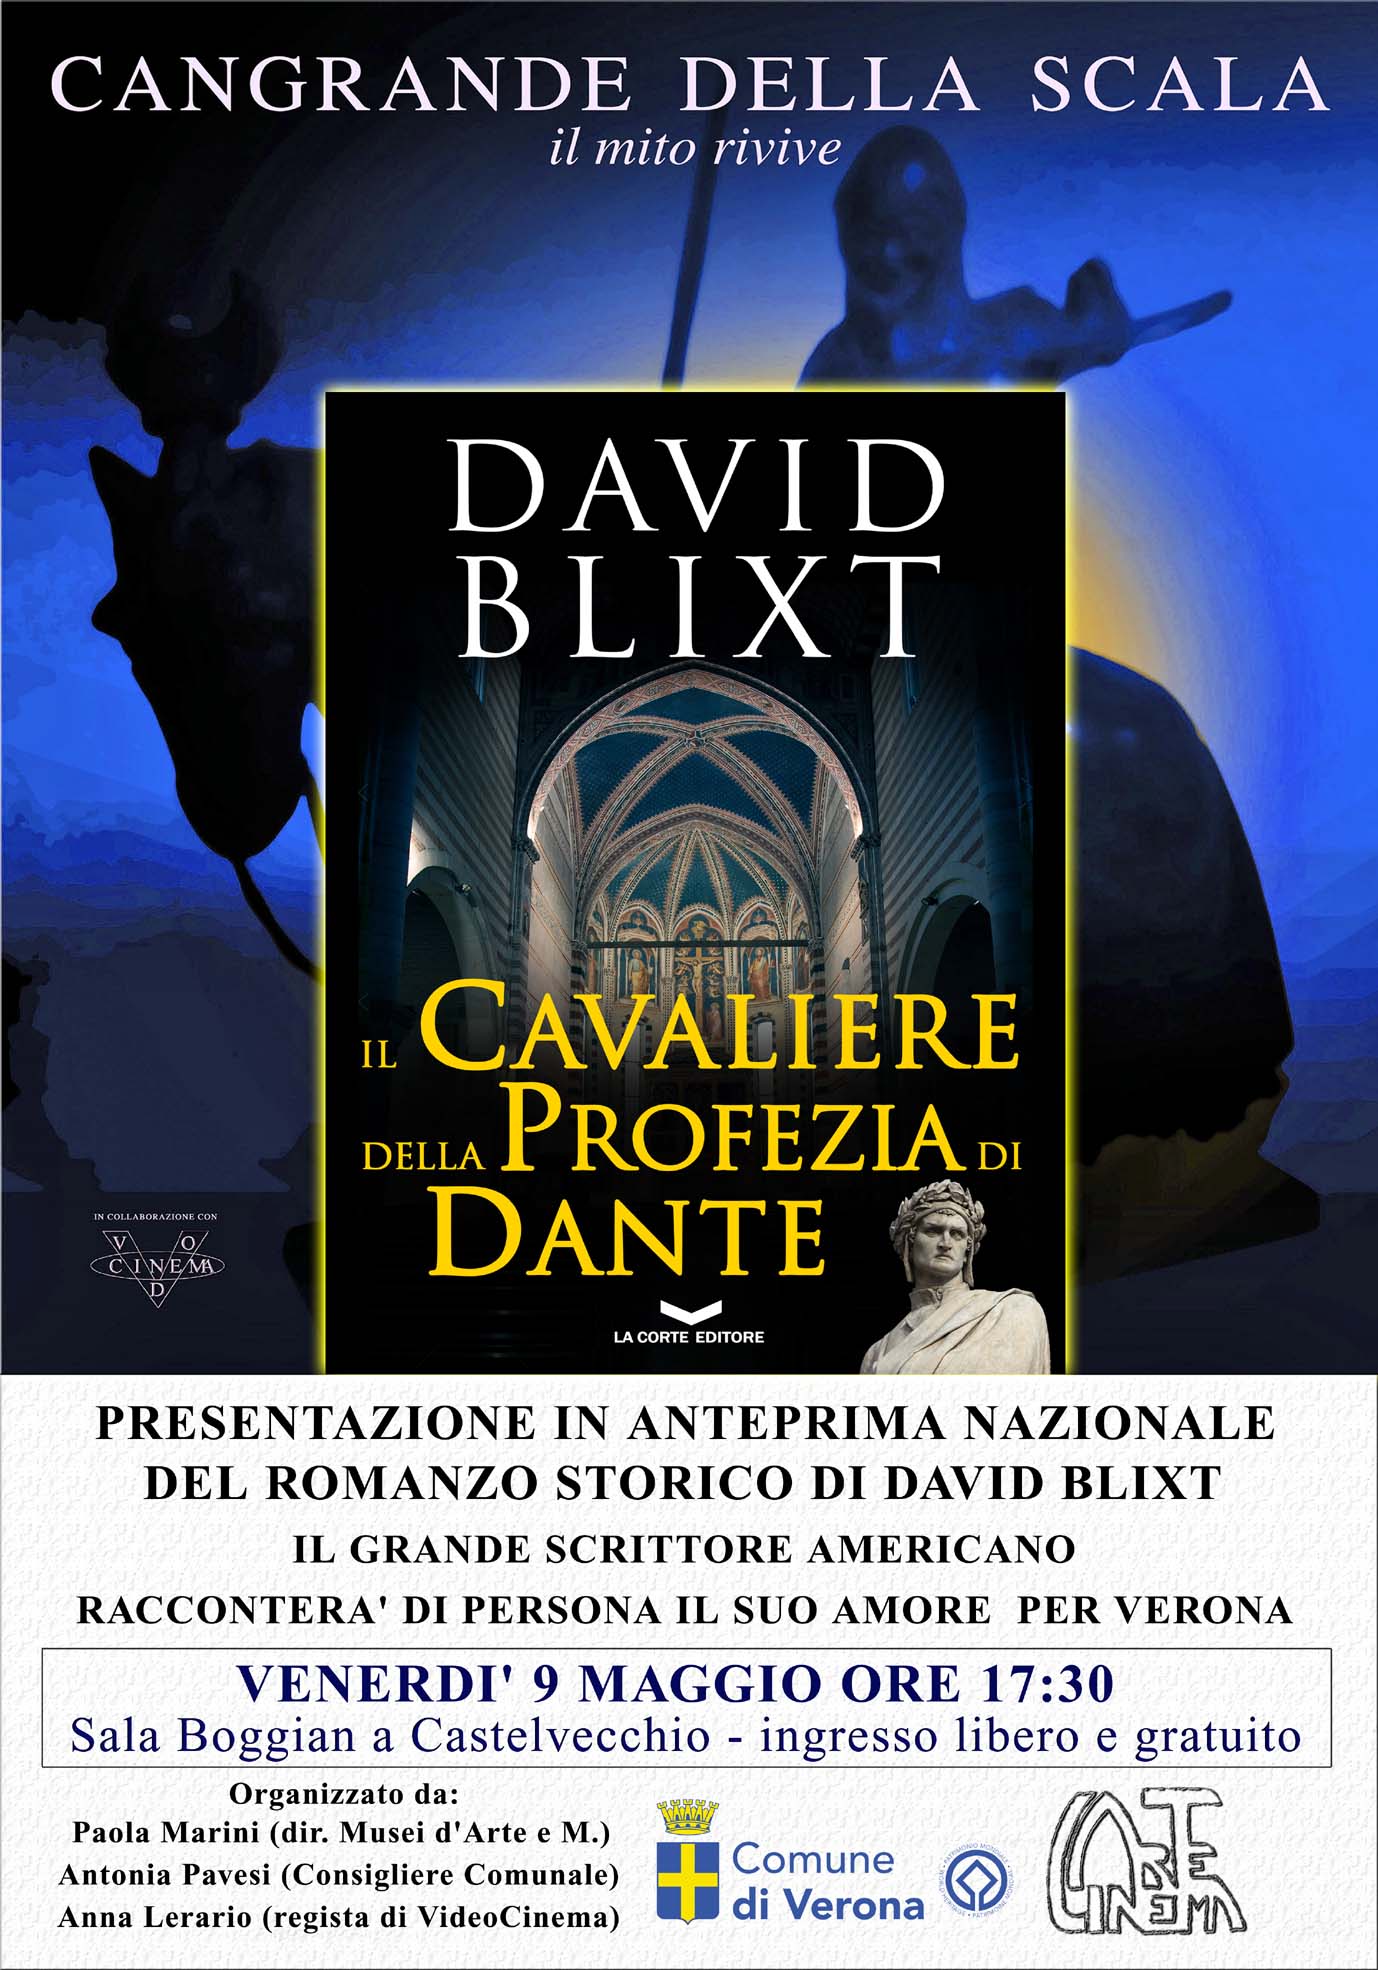 INVITO_evento_gratuito_Castelvecchio_9_maggio_ore_17e30_small